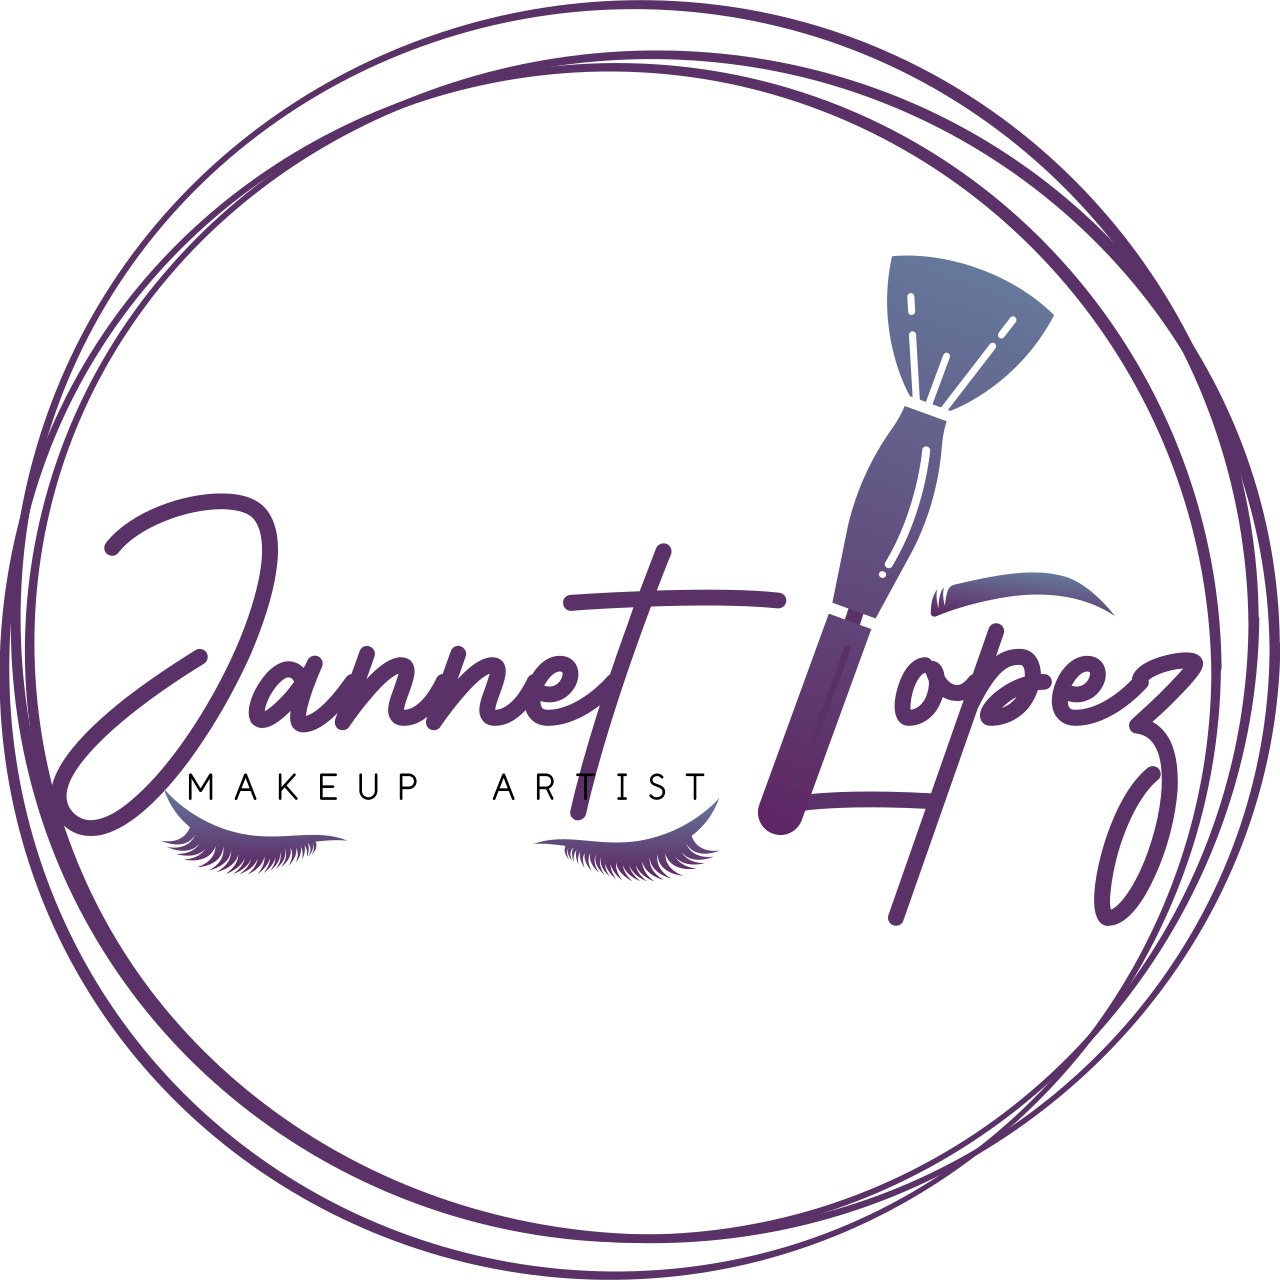 Jannet Lopez 's logo